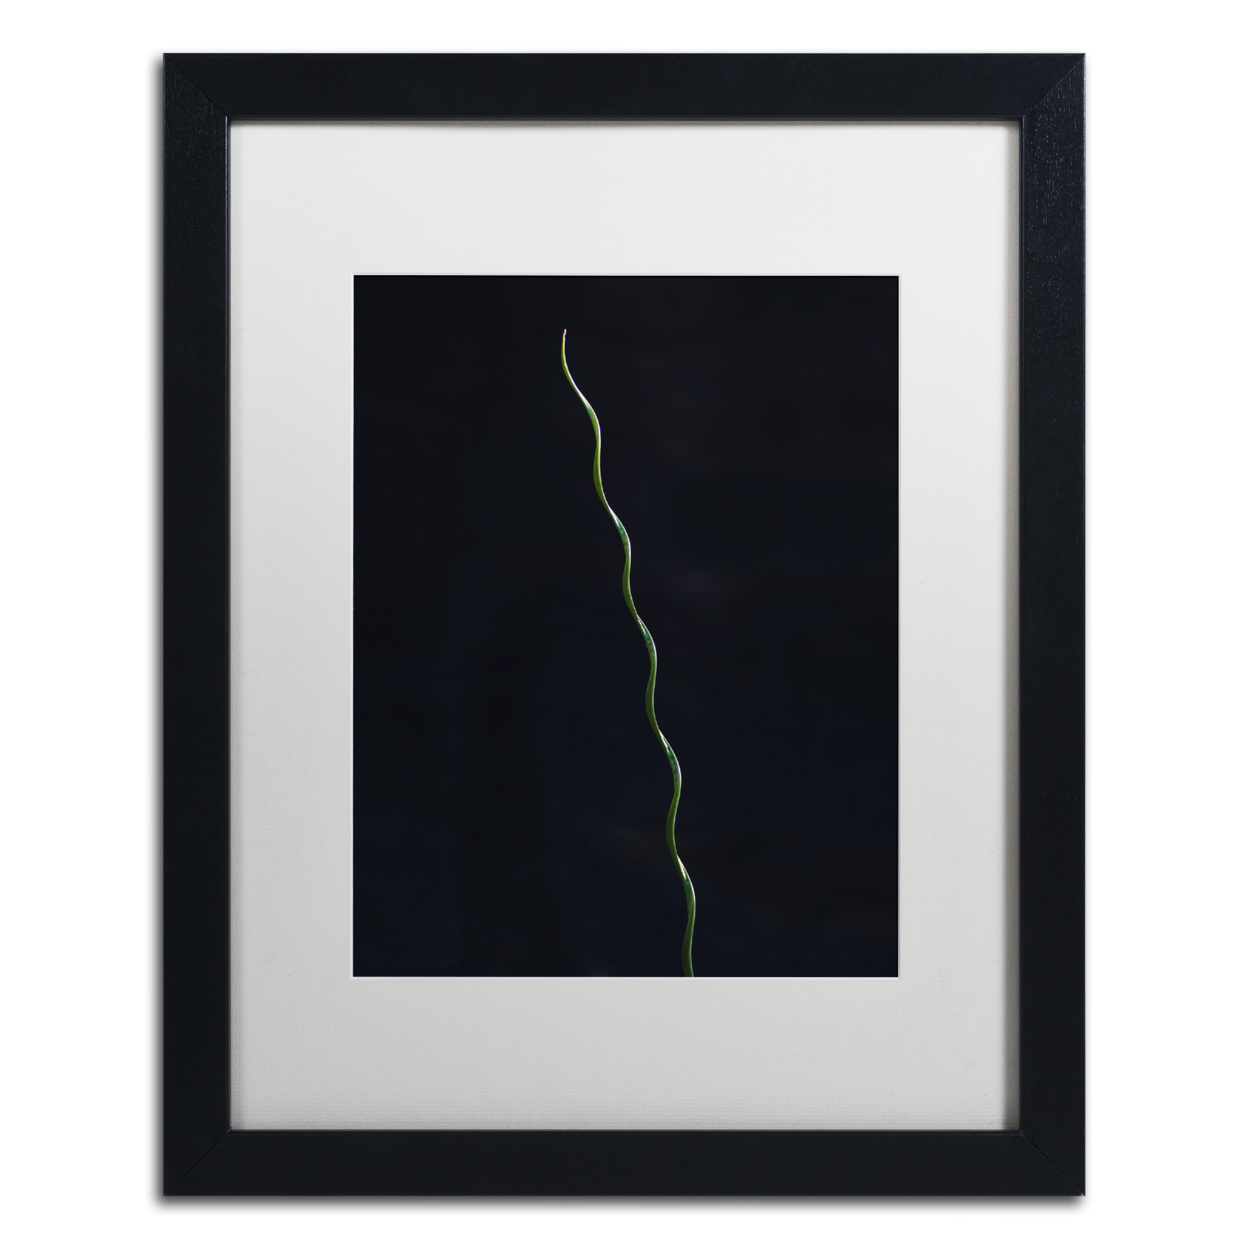 Kurt Shaffer 'The Green Spiral' Black Wooden Framed Art 18 X 22 Inches